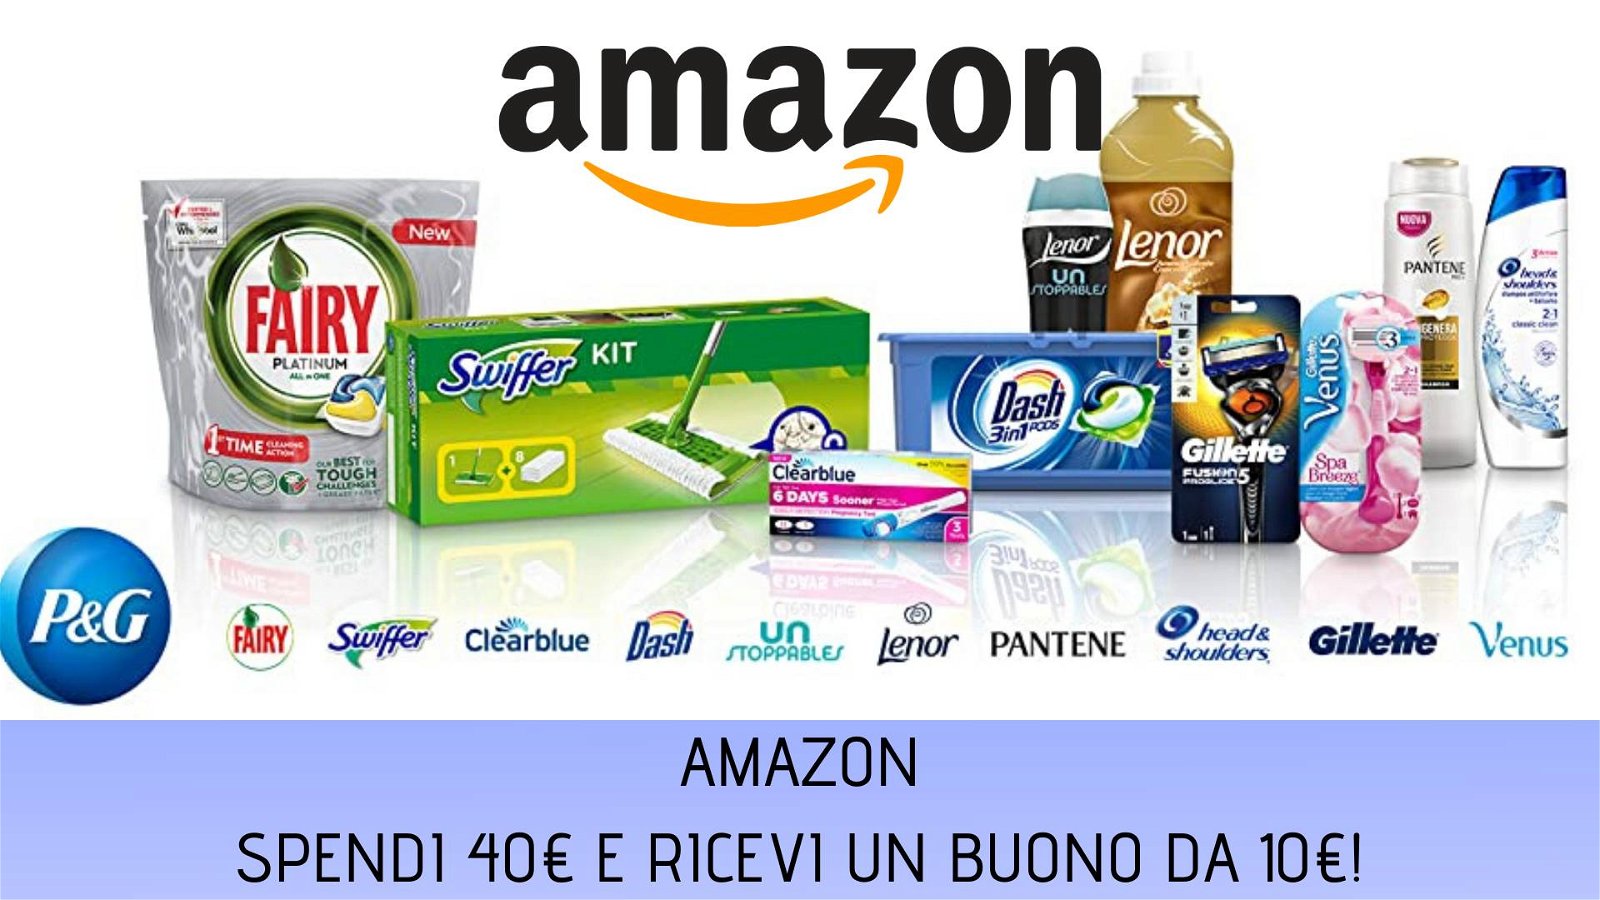 Immagine di Amazon: 10€ di buono sconto ogni 40€ di acquisti